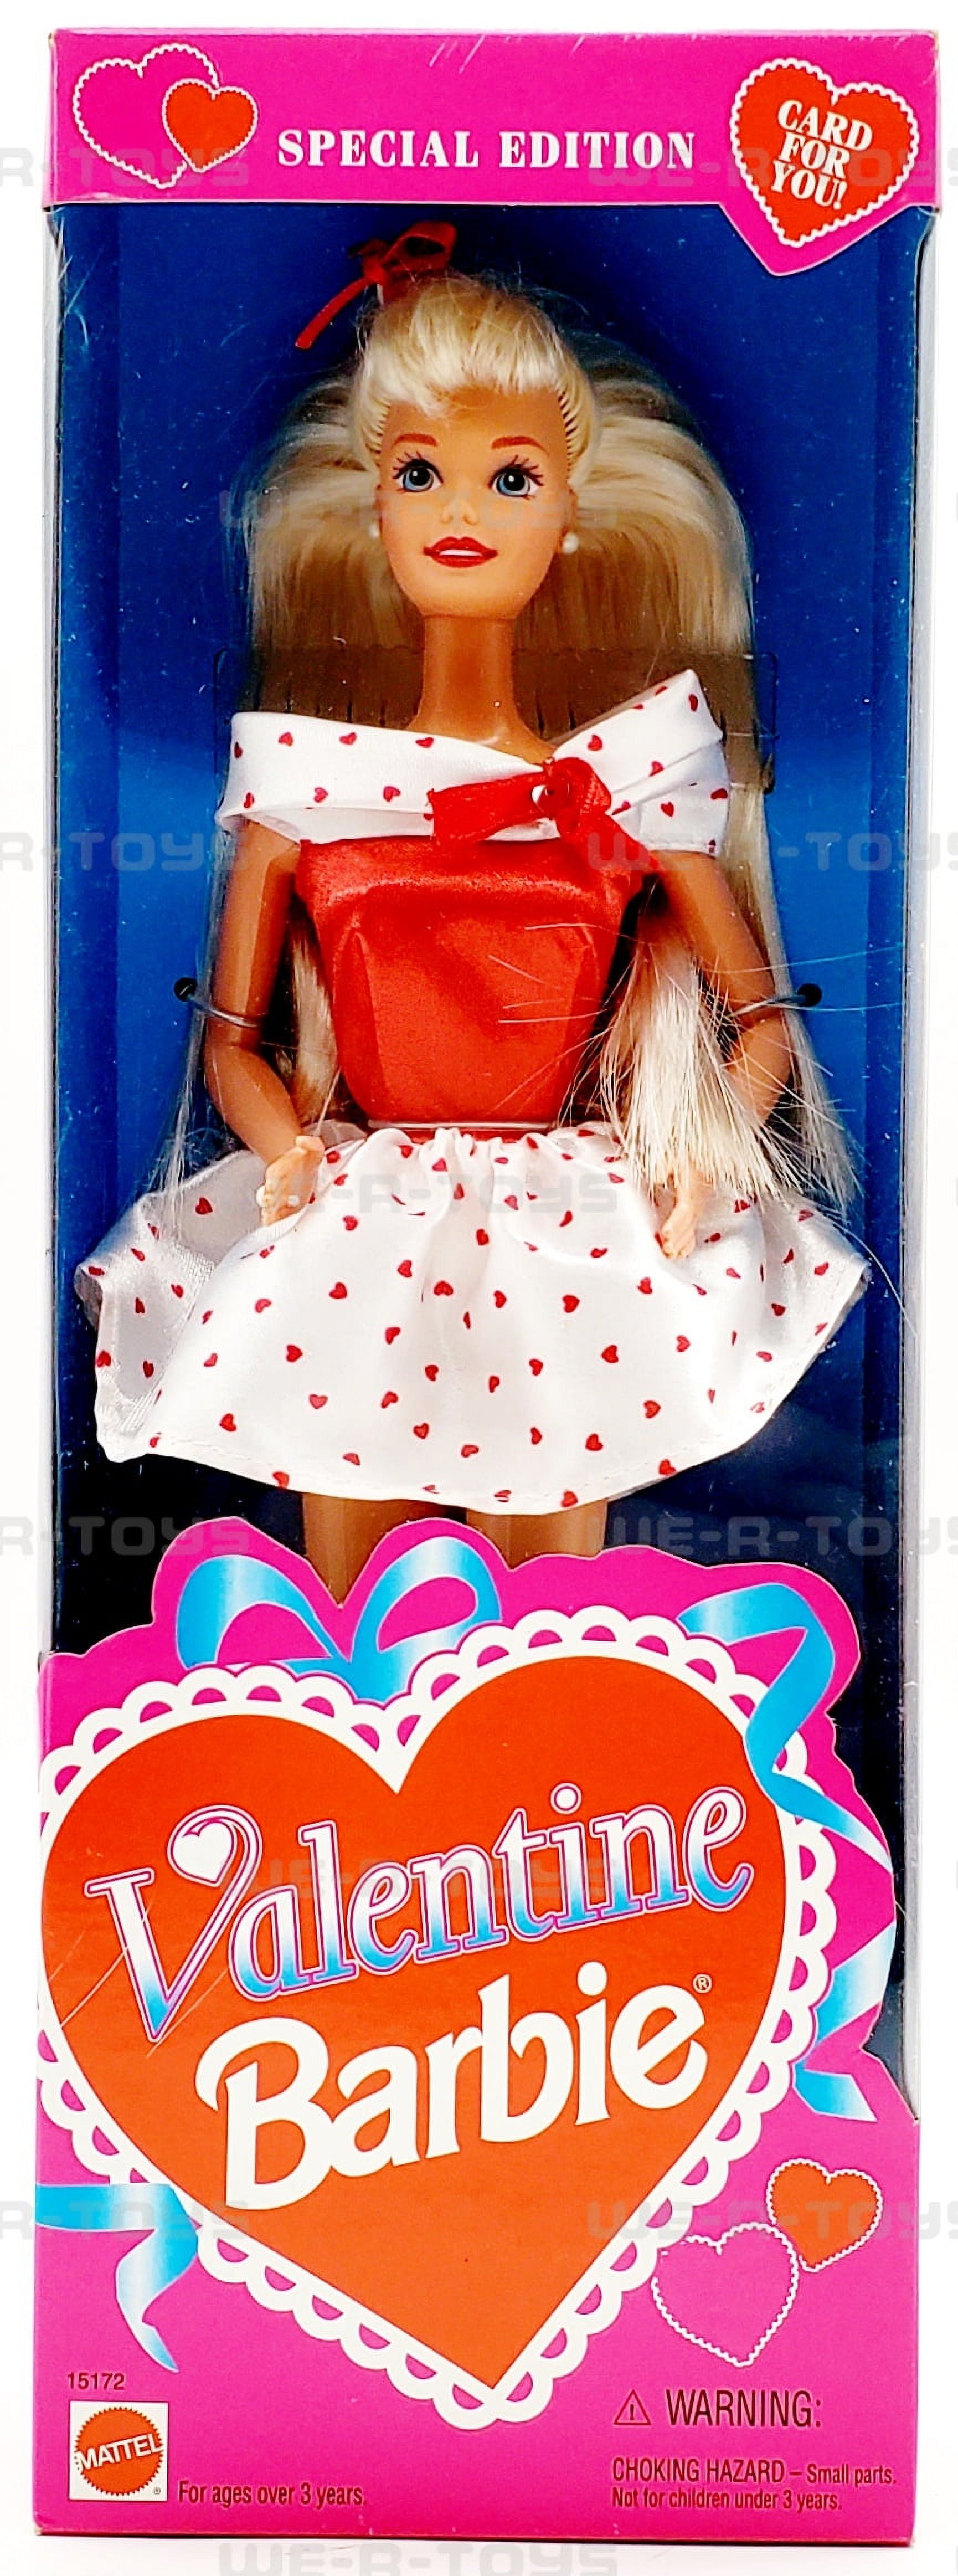 Valentine Barbie Doll Special Edition 1995 Mattel 15172